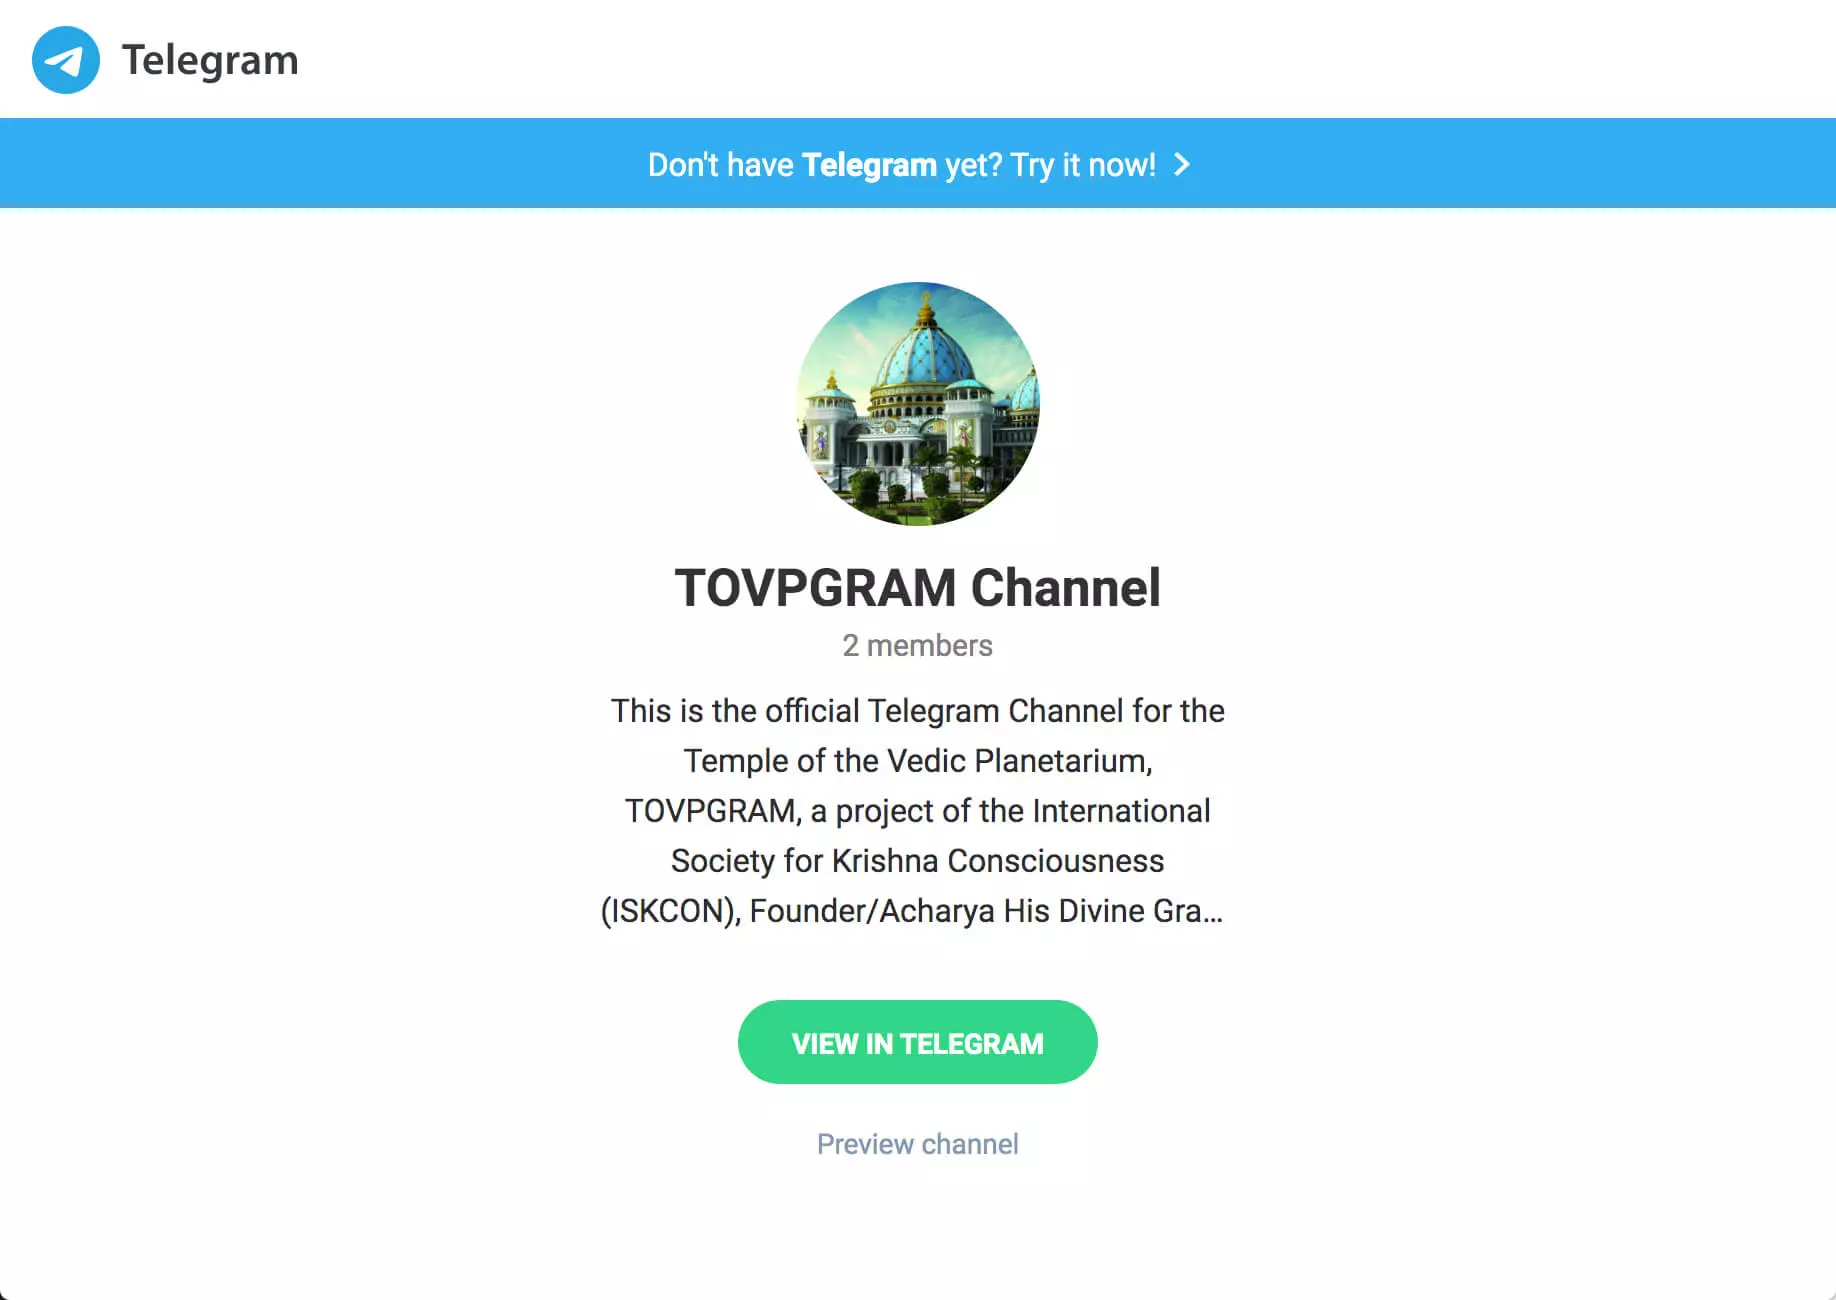 ХВП запускает канал приложения Telegram, ТОВПГРАМ